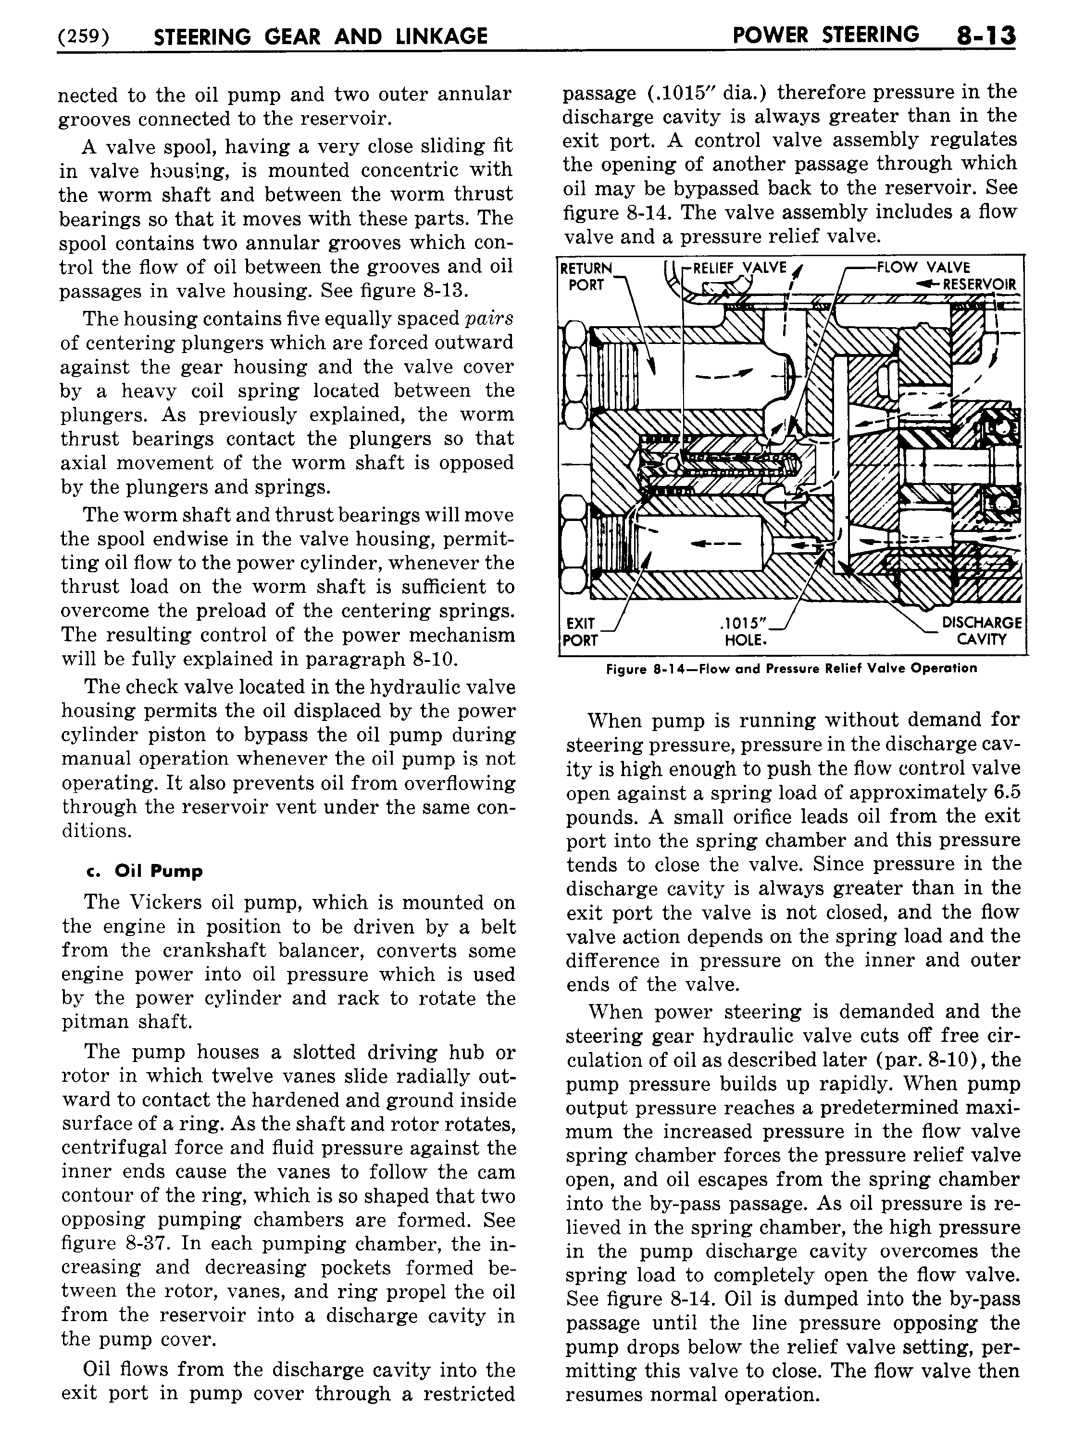 n_09 1955 Buick Shop Manual - Steering-013-013.jpg